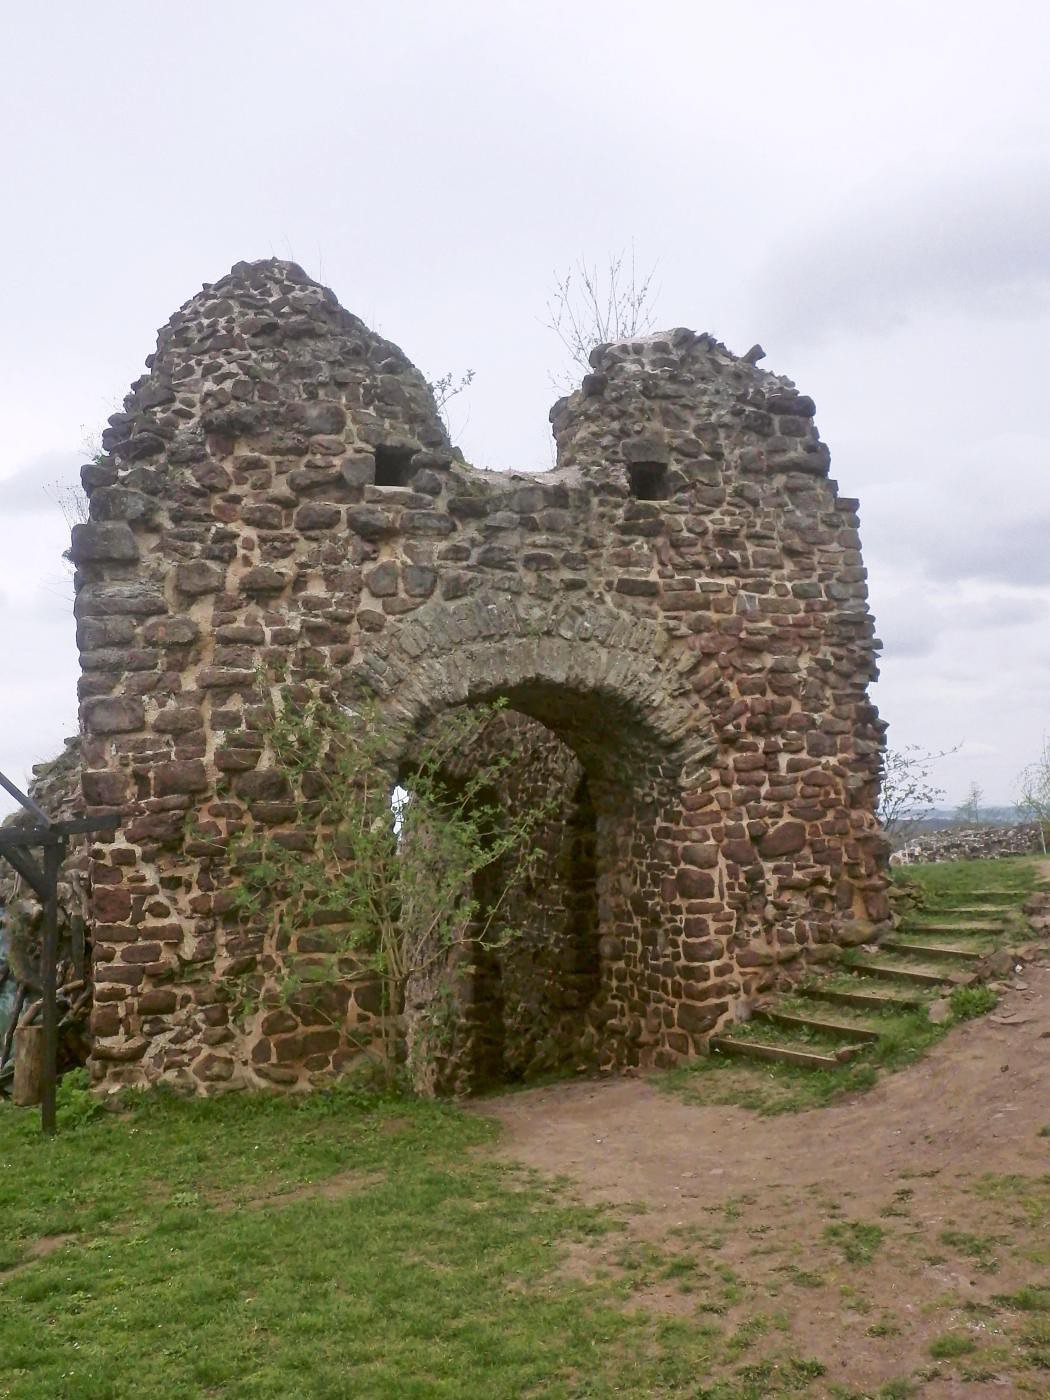 Ruine Ebersburg